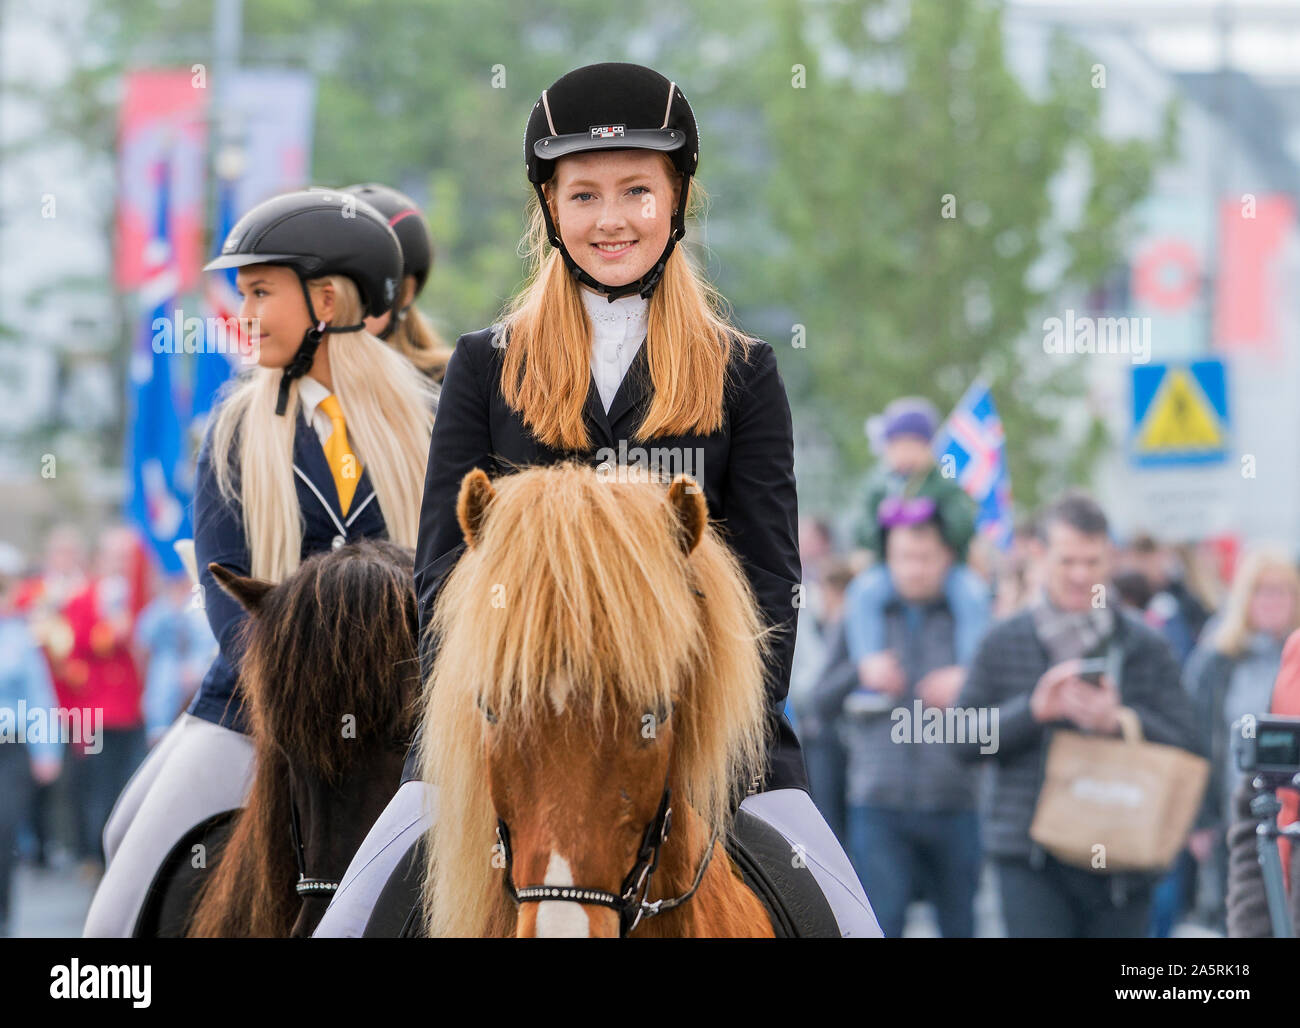 Teen girls on horseback during the independence day celebration, Reykjavik, Iceland Stock Photo